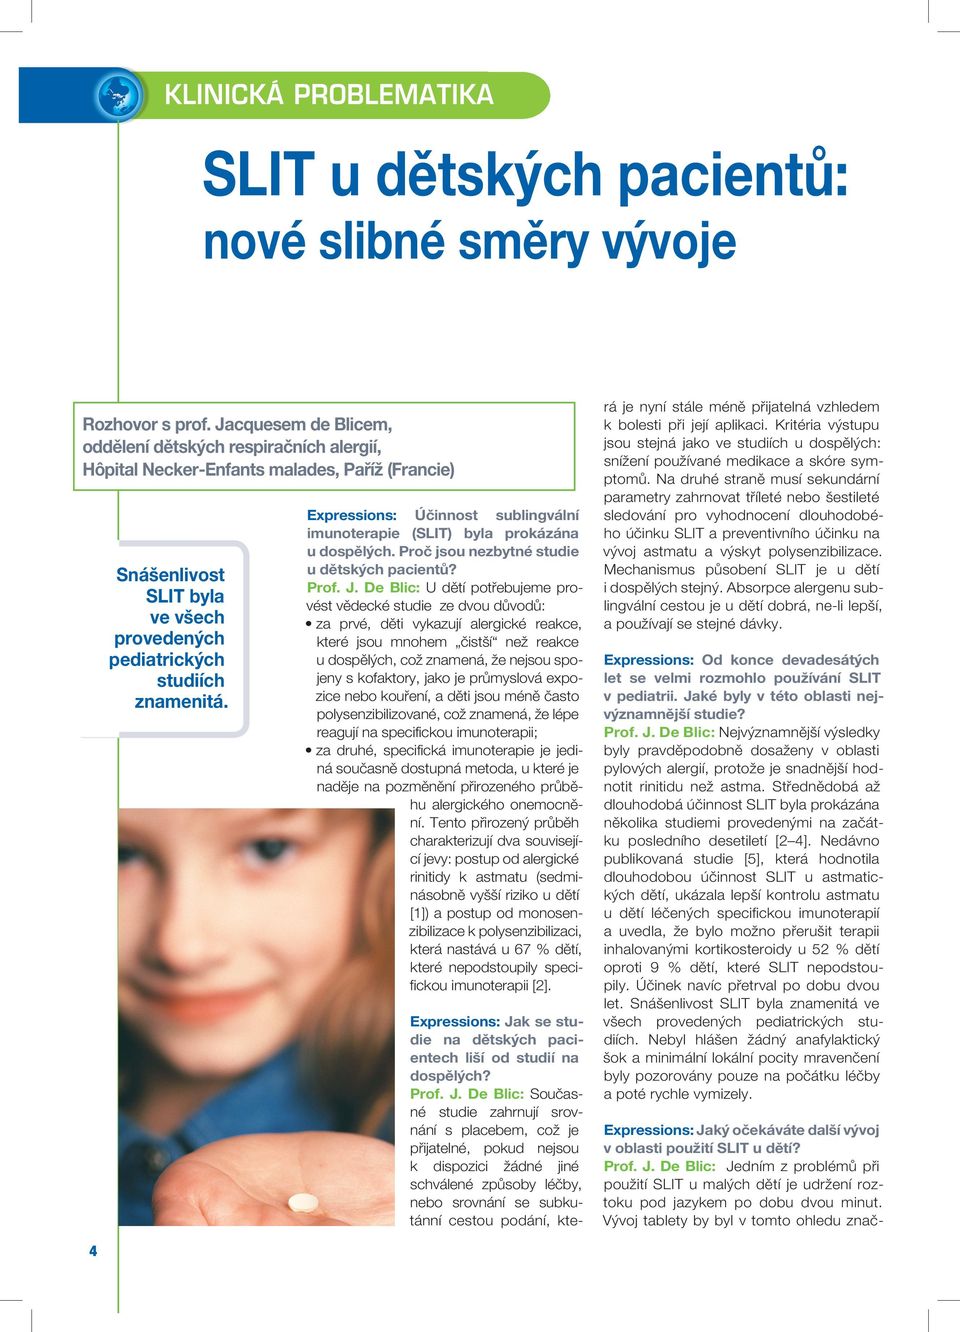 Expressions: Účinnost sublingvální imunoterapie (SLIT) byla prokázána u dospělých. Proč jsou nezbytné studie u dětských pacientů? Prof. J.